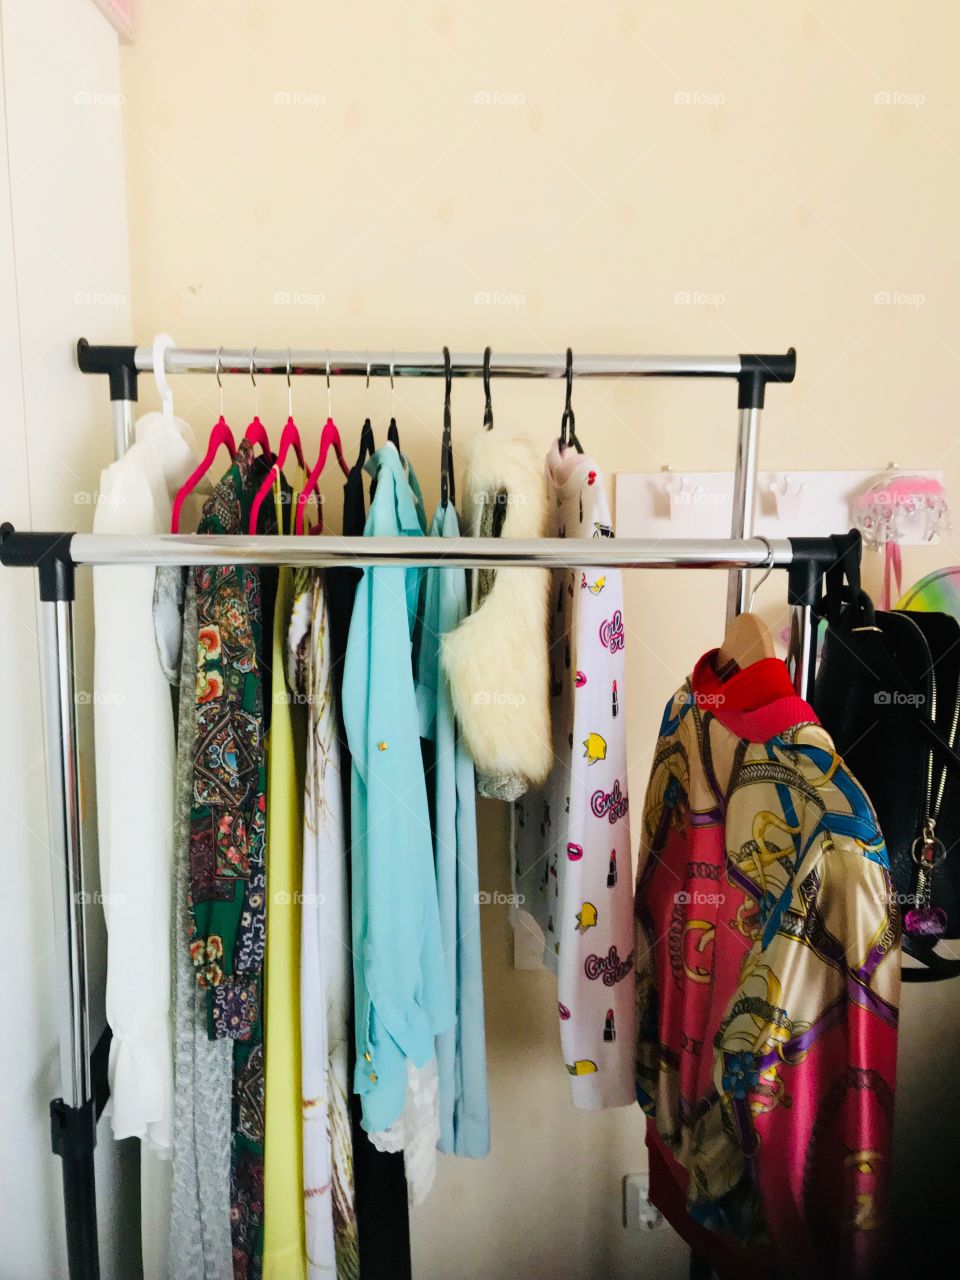 Wardrobe, Stock, Wear, Hanger, Hanging